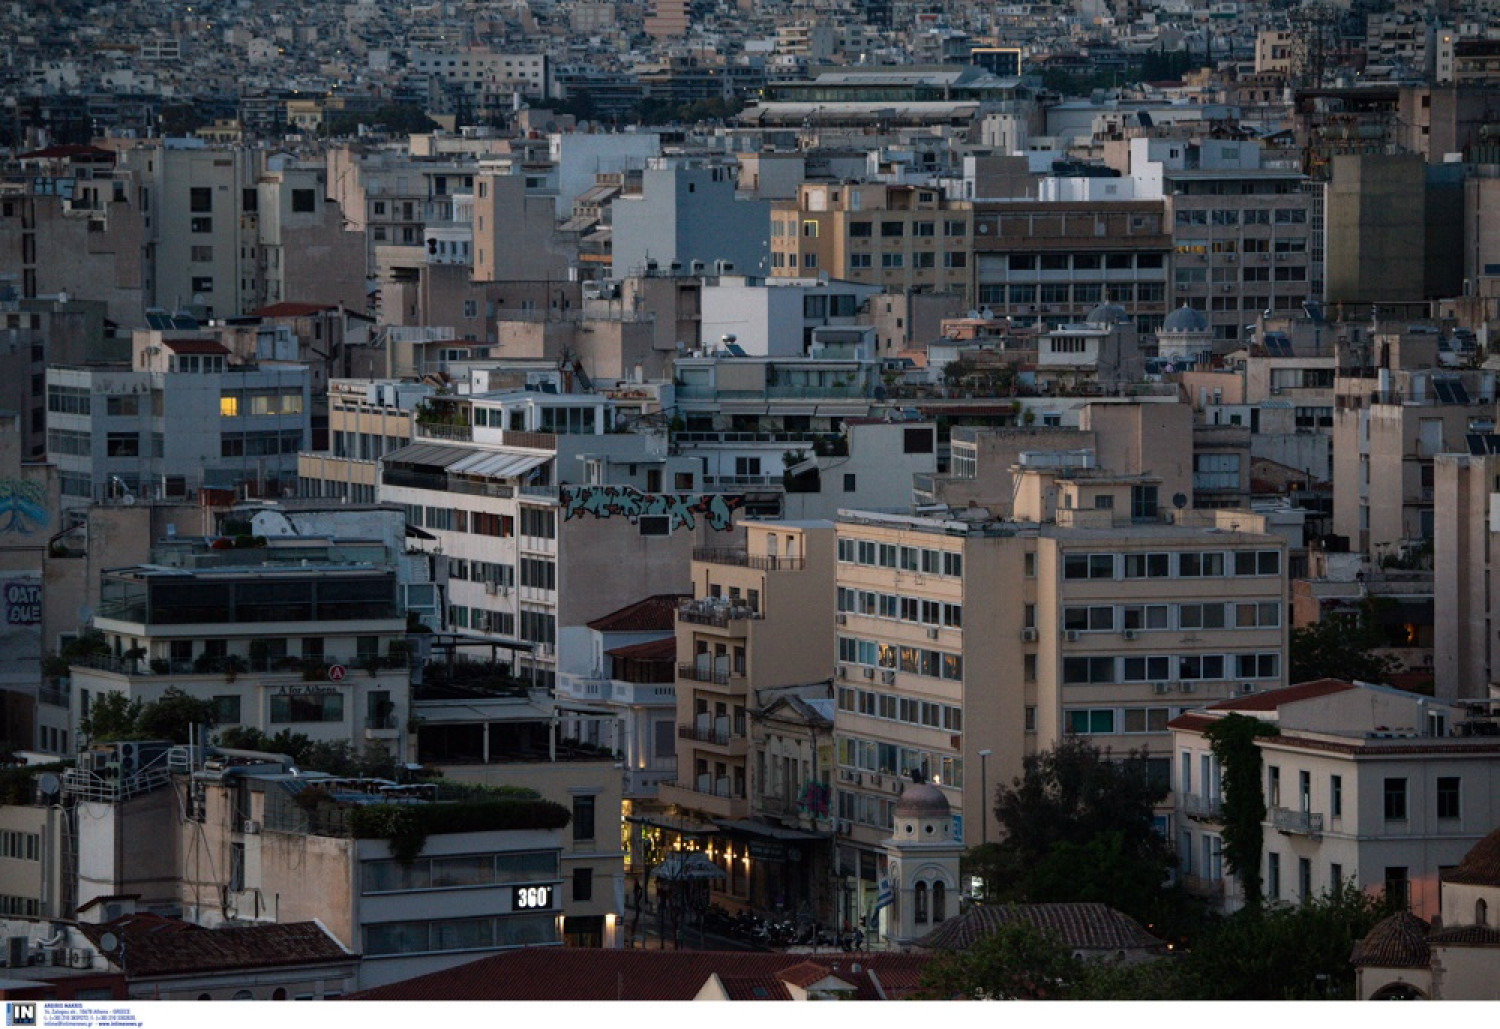 Βάζουν «βόμβα» στον ΕΝΦΙΑ: Προτείνουν αυξήσεις φωτιά στις αντικειμενικές έως και 100% σε όλη την Αθήνα